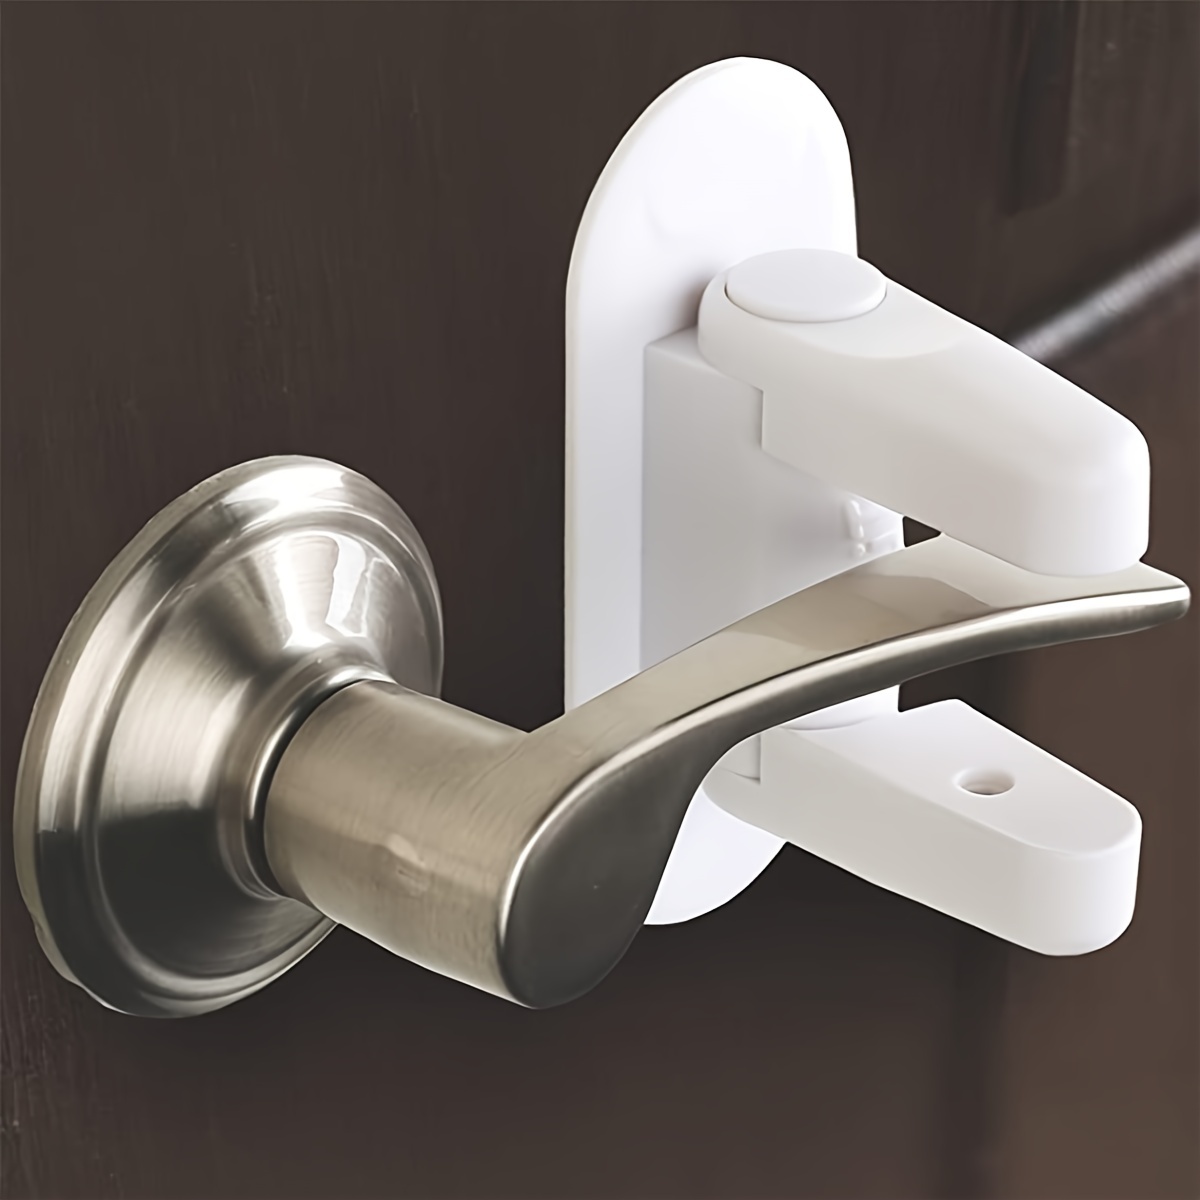 Home Reinforced Lock Security Door Lock Hotel Anti-theft Buttons Home  Bedroom Door Latch - Door Locks - AliExpress